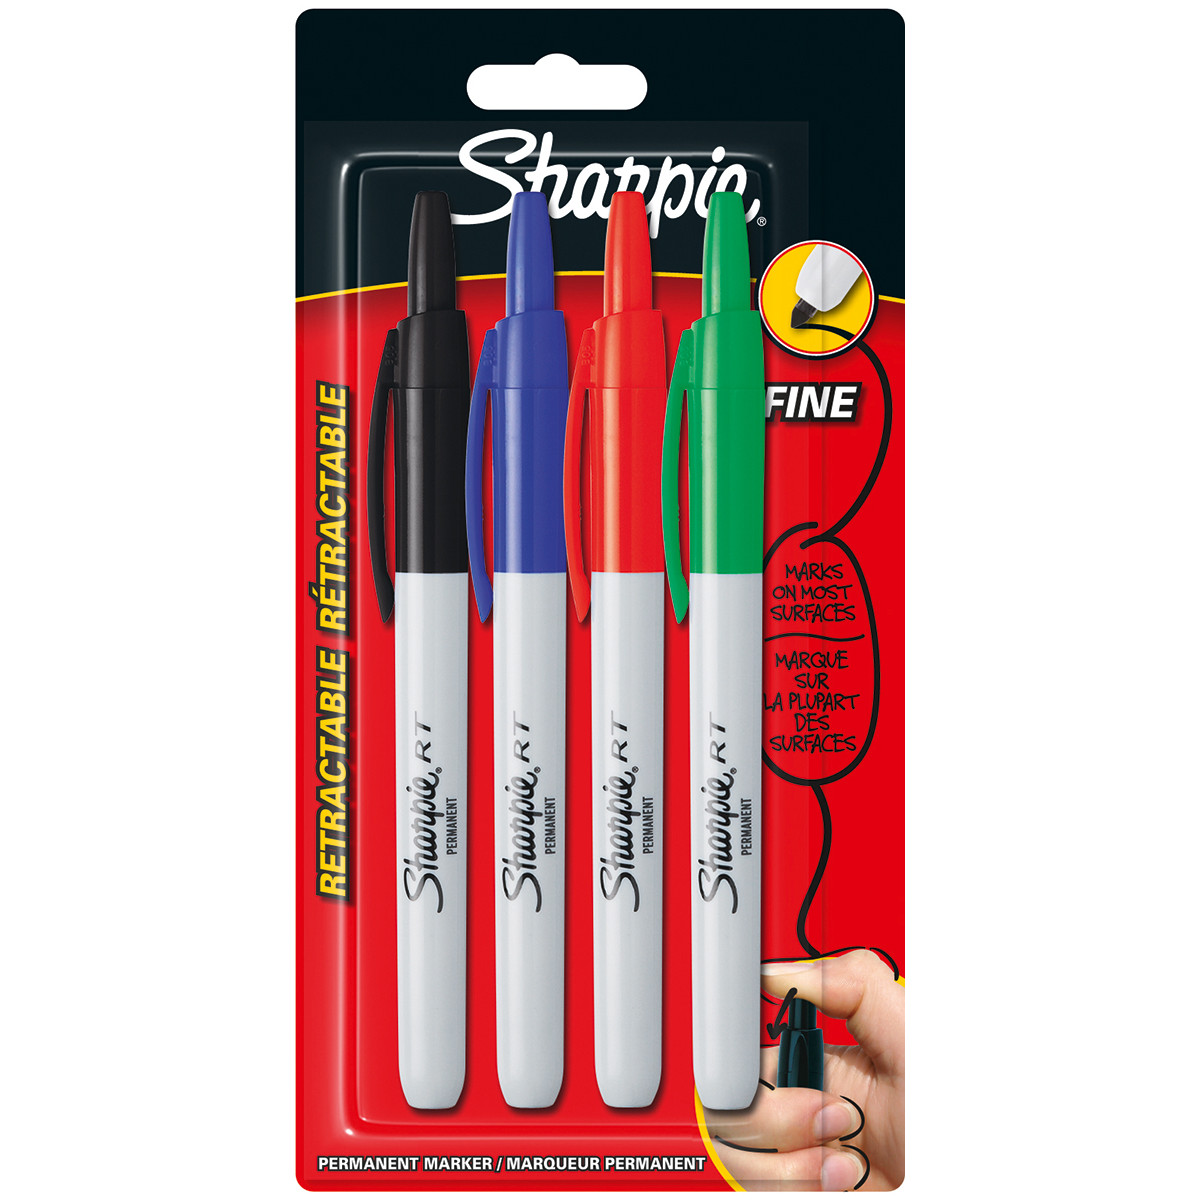 Retractable felt tip pens? : r/pens